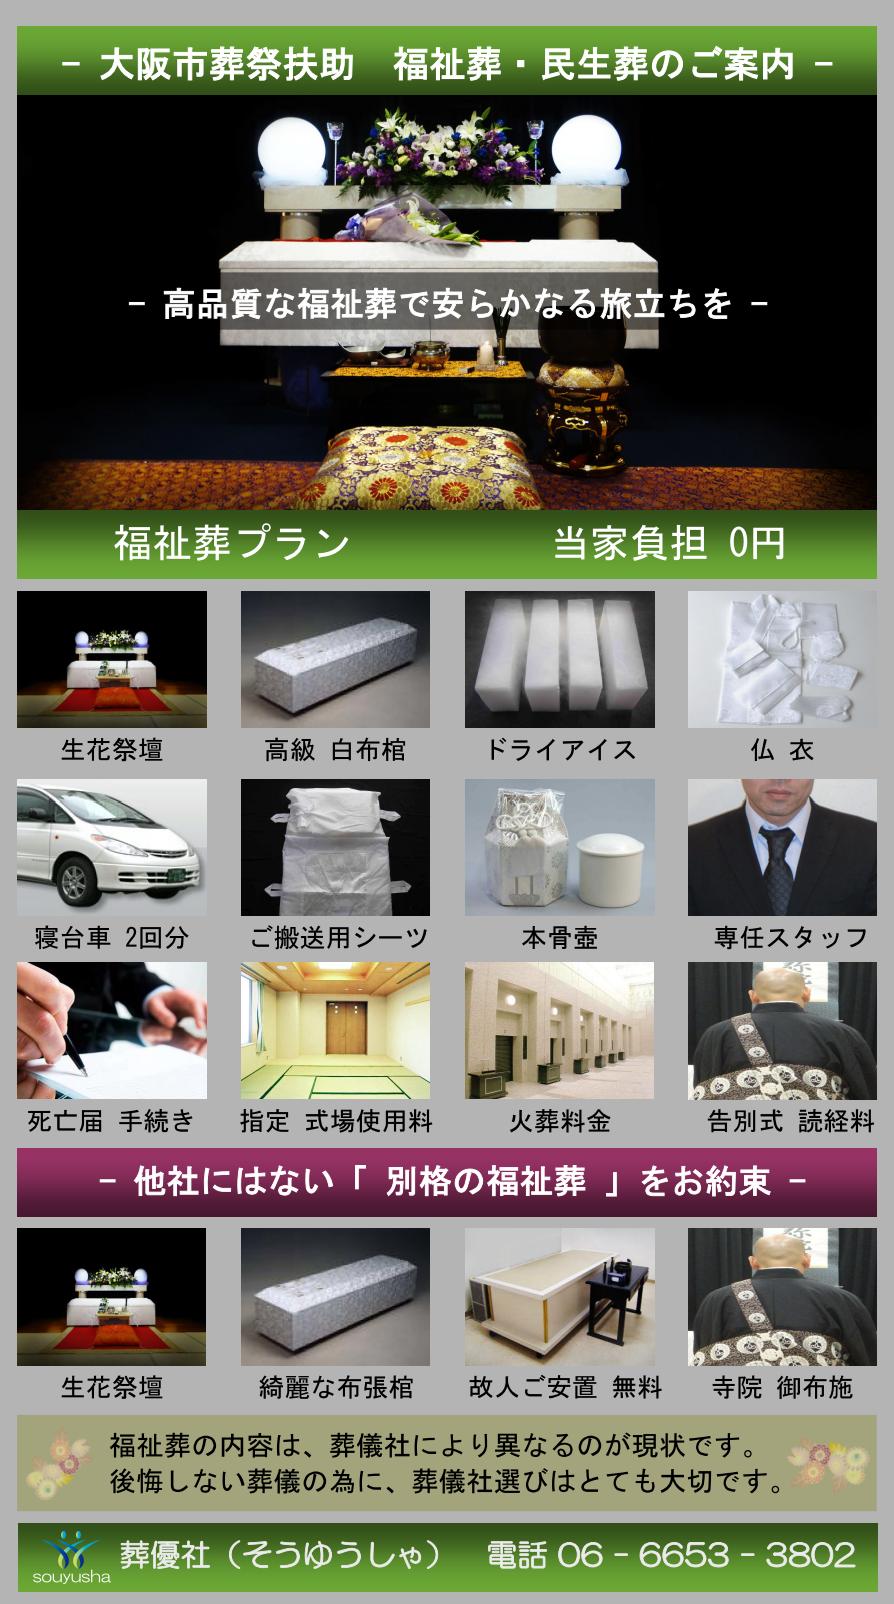 大阪市 都島区での福祉葬、生活保護者のお葬式のご案内